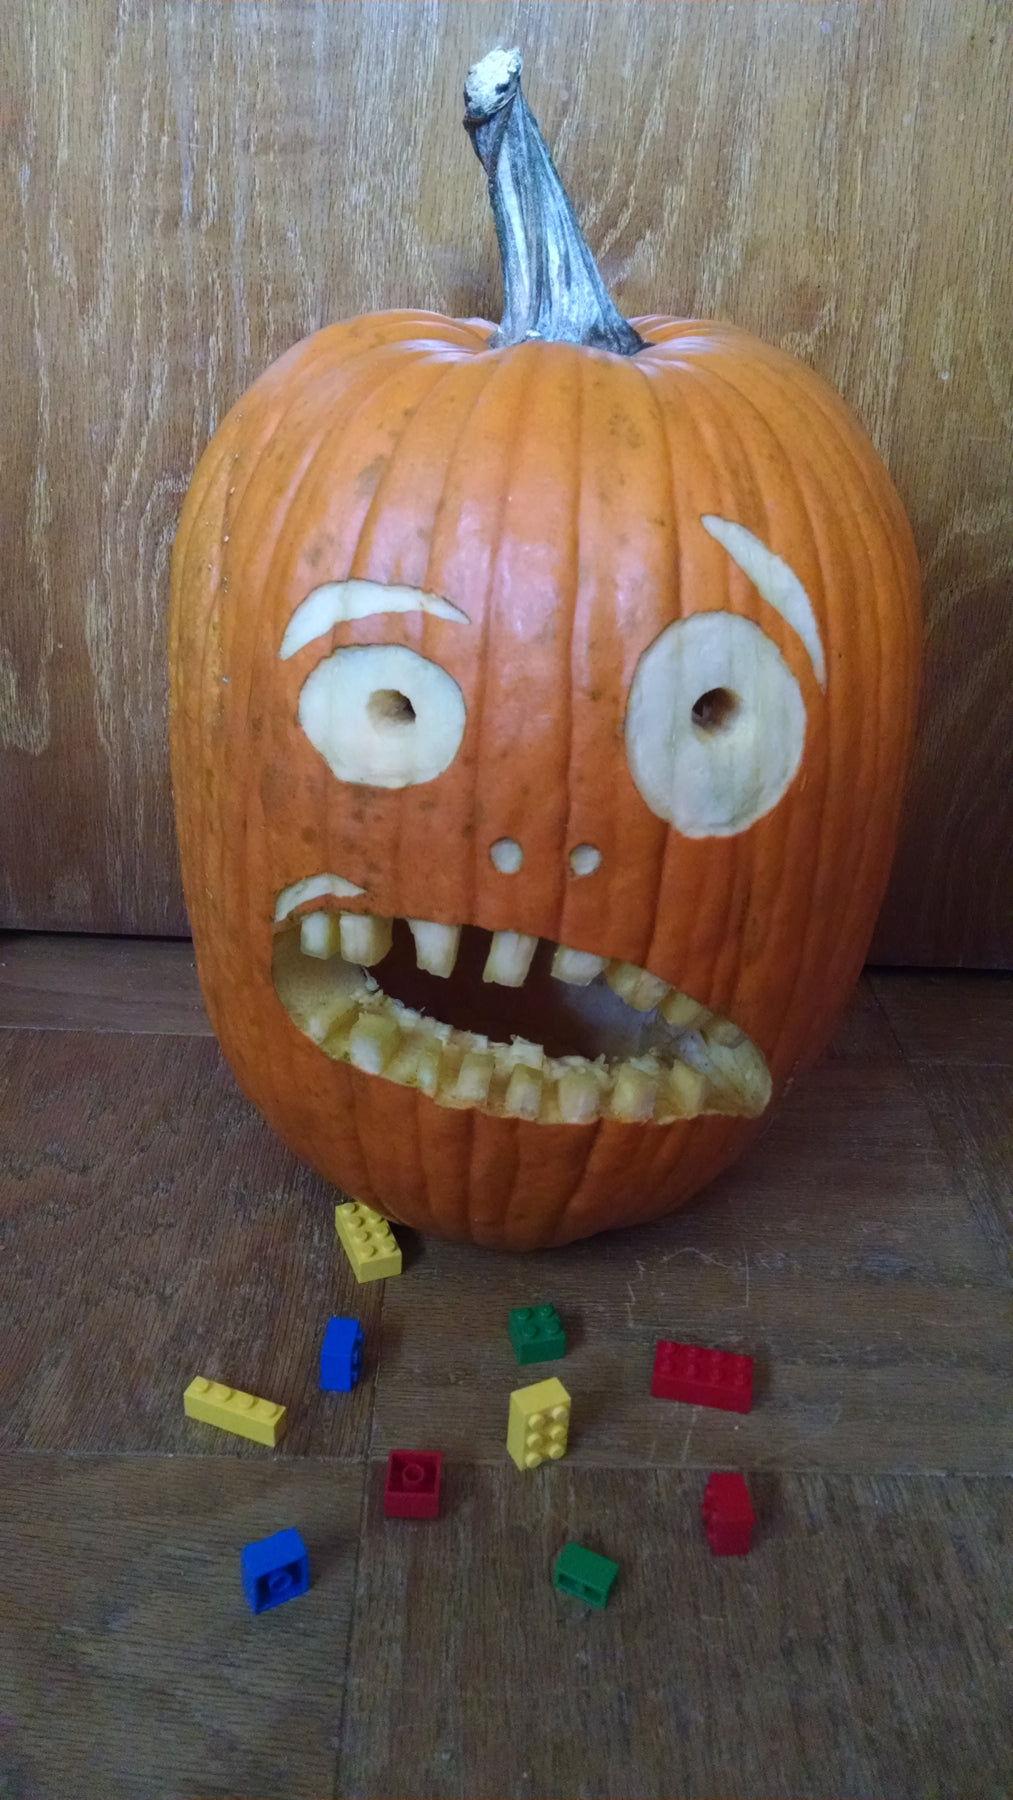 The Startled Parent Pumpkin